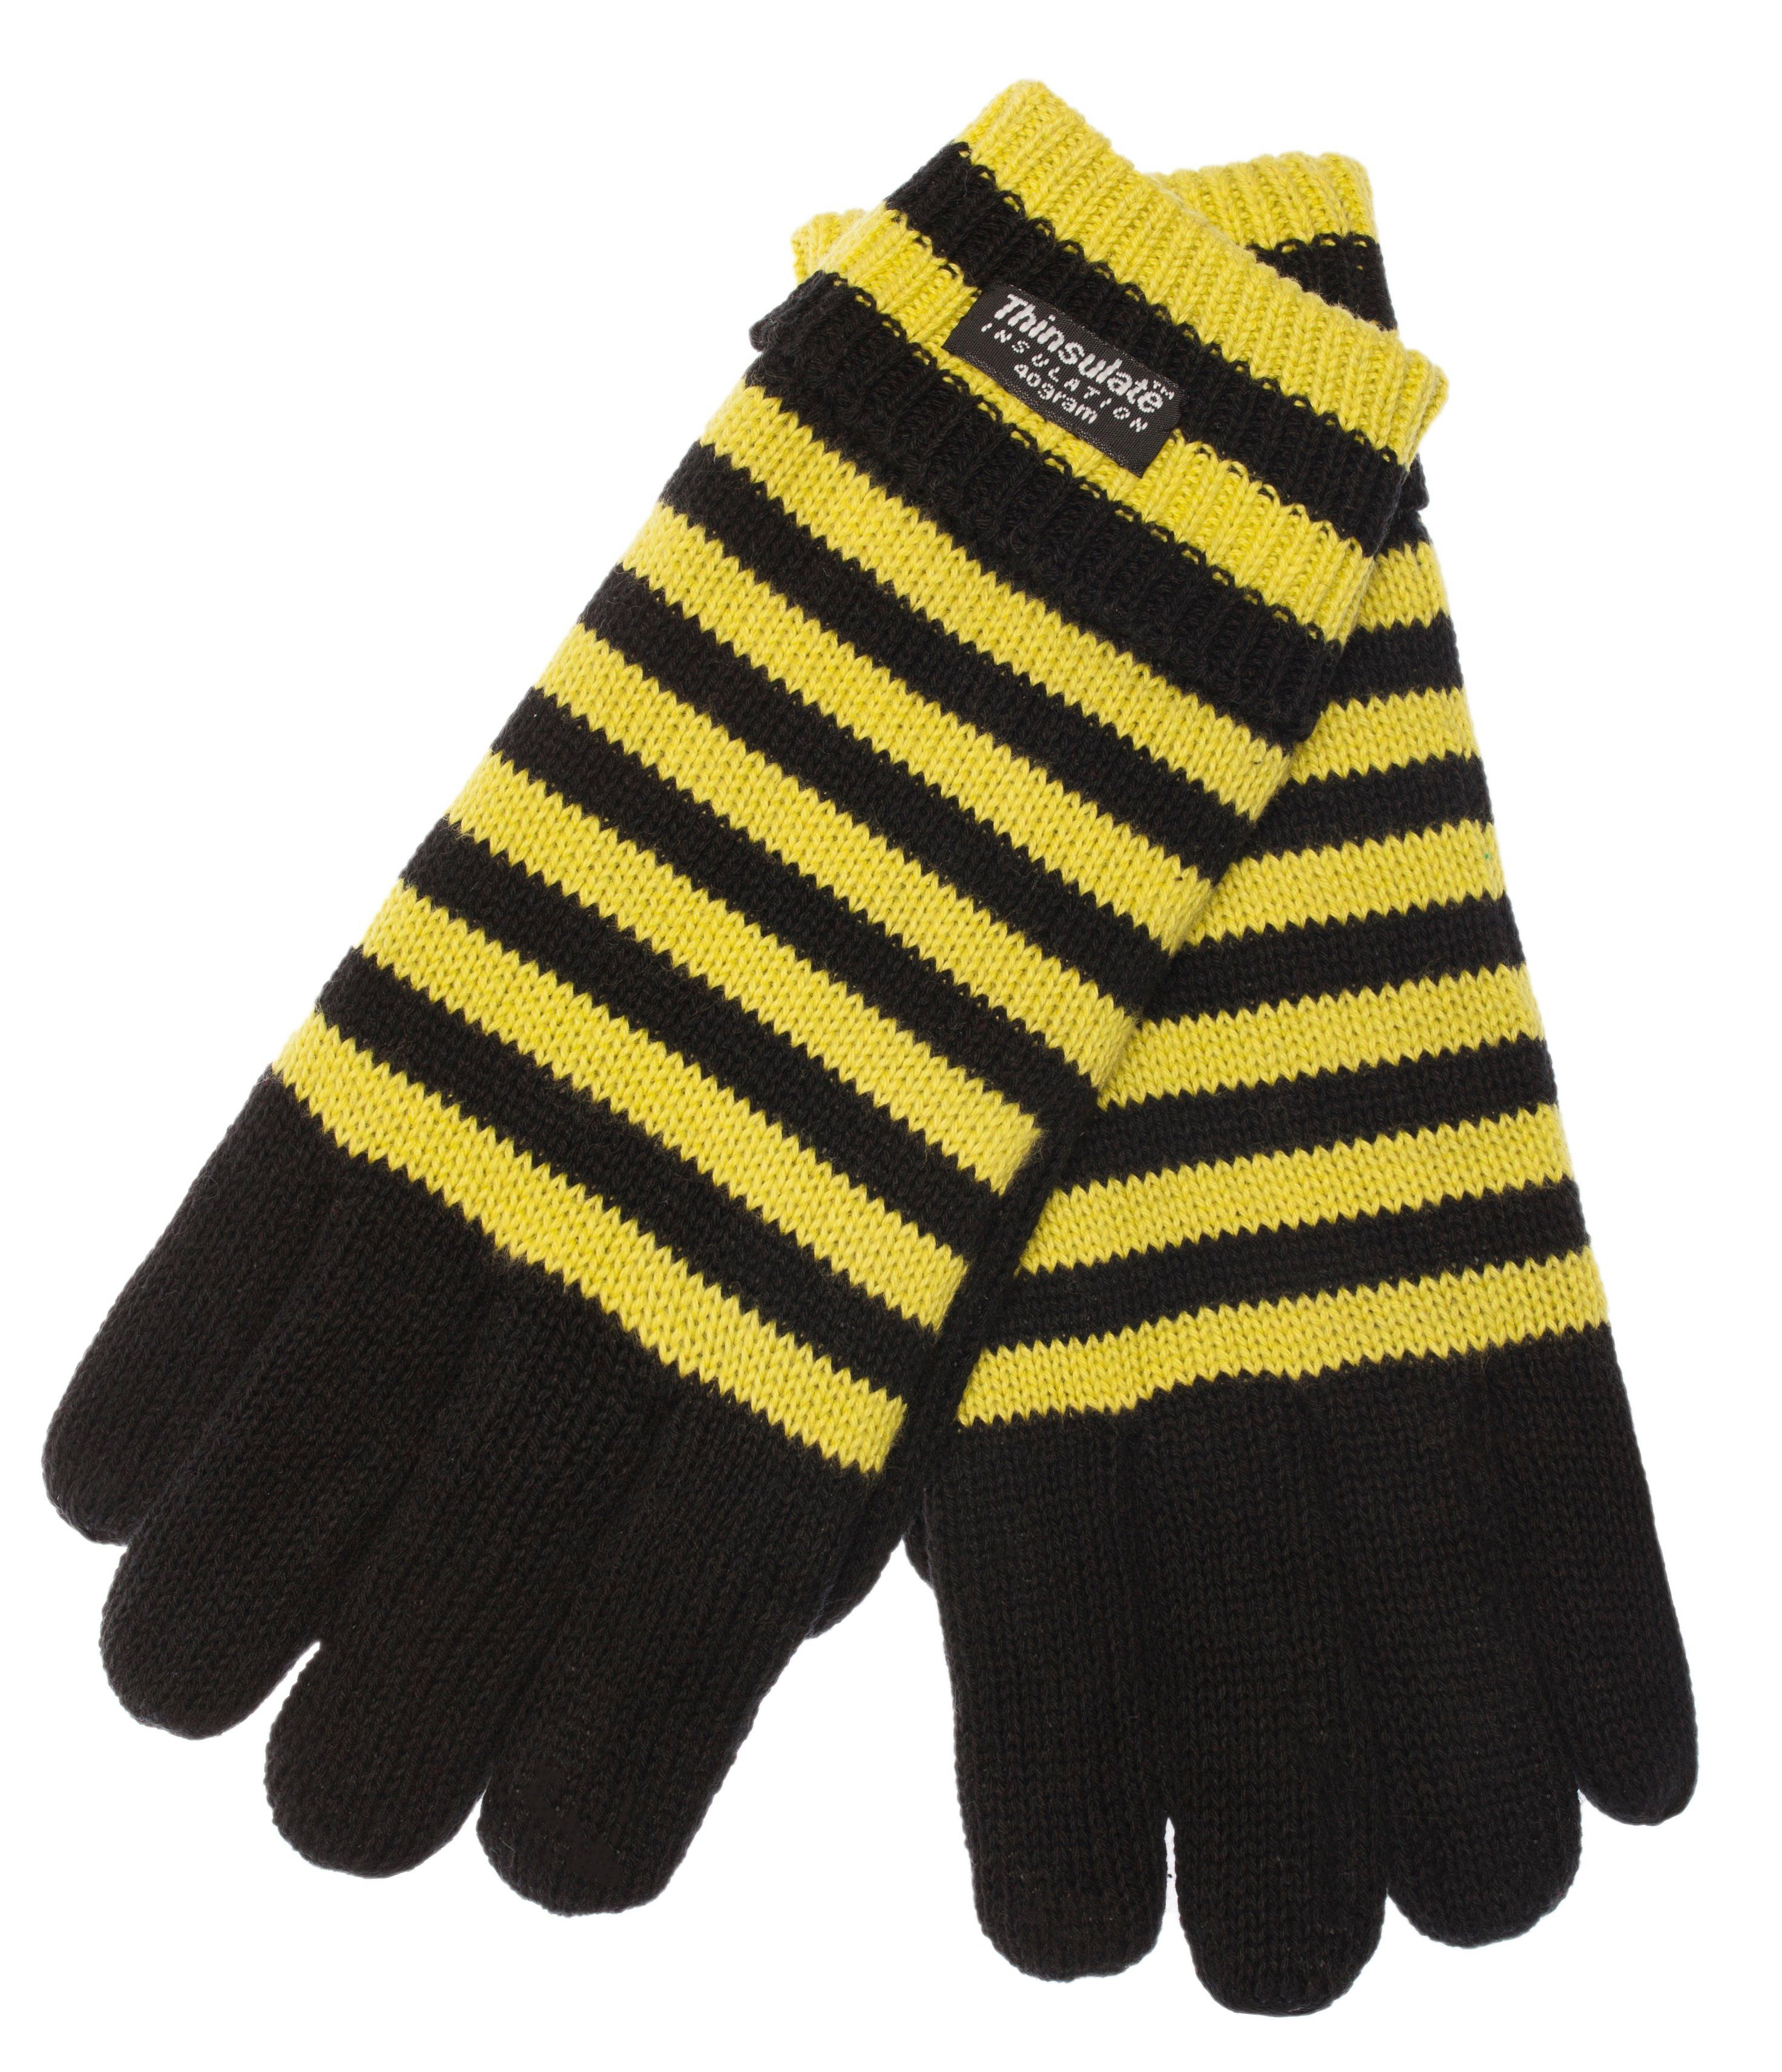 Informationen zum Versandhandel EEM Strickhandschuhe Herren-2805 schwarz-gelb